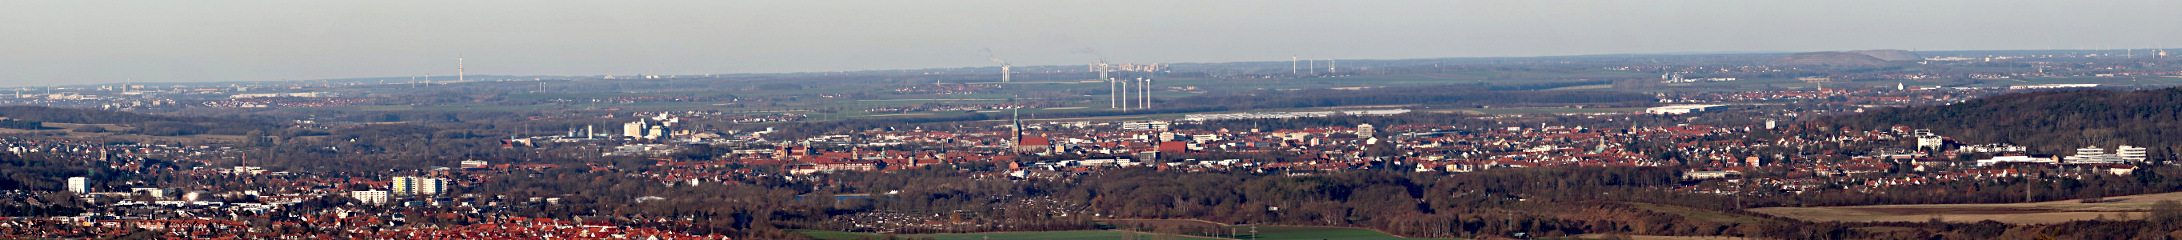 Panorama der Stadt Hildesheim